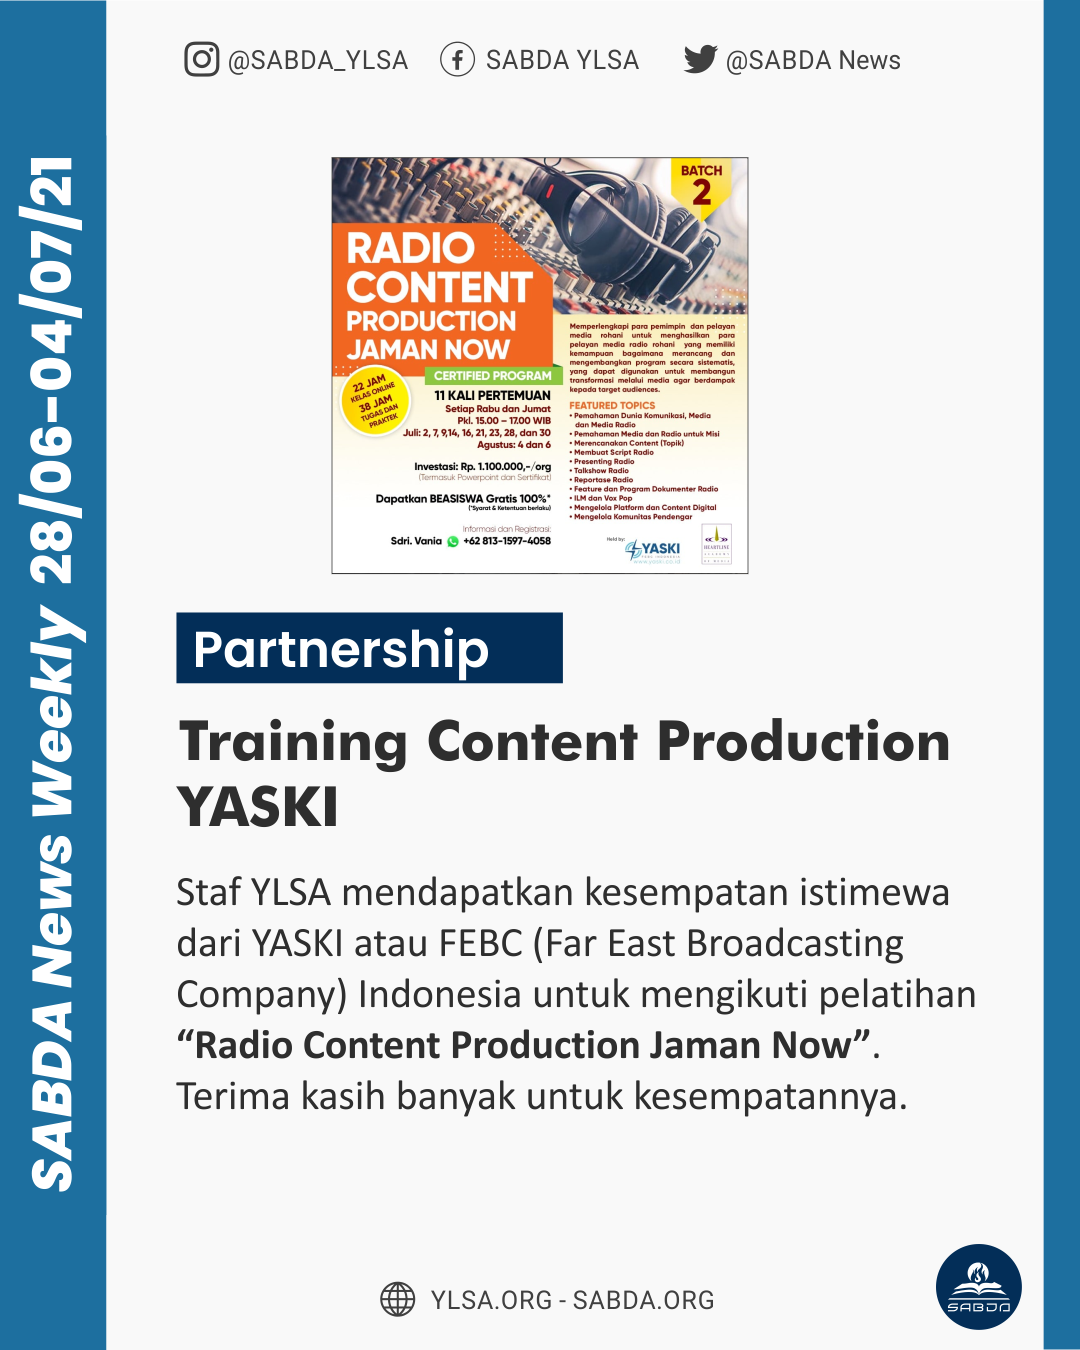 Training Content Production YASKI